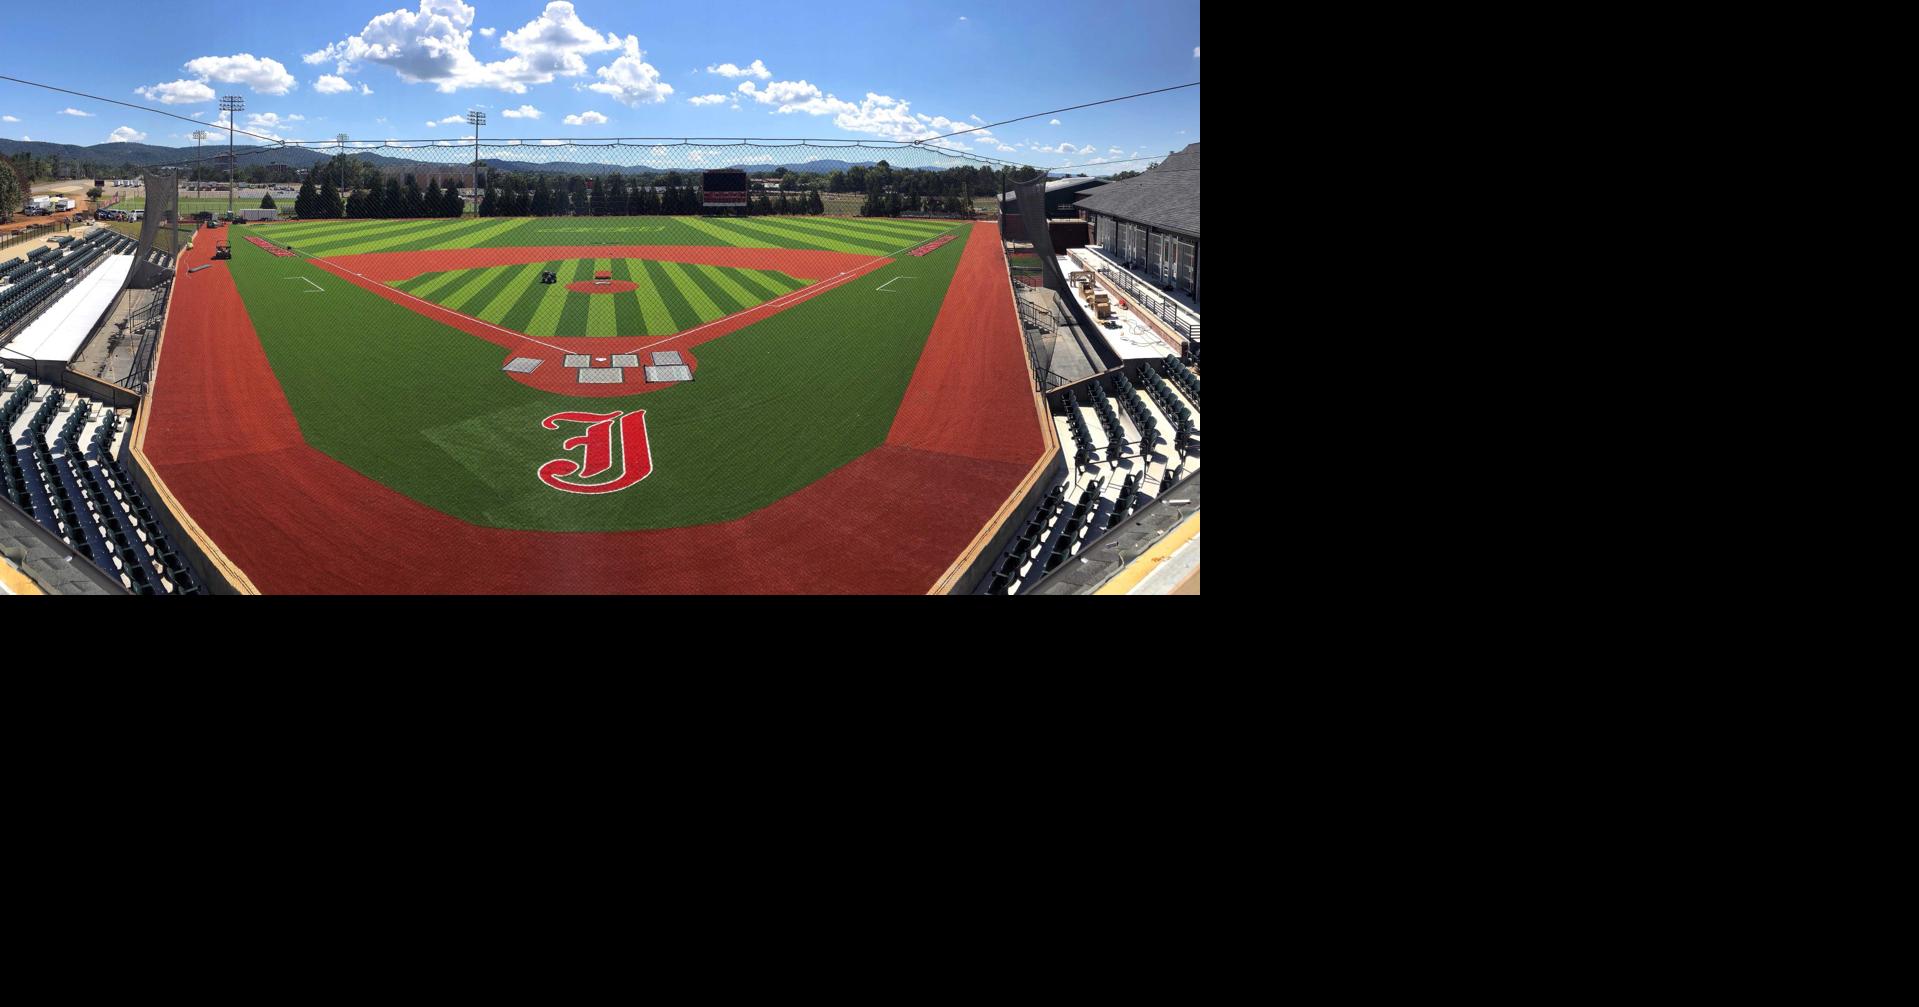 Small' Jacksonville baseball stadium is historic diamond in the rough